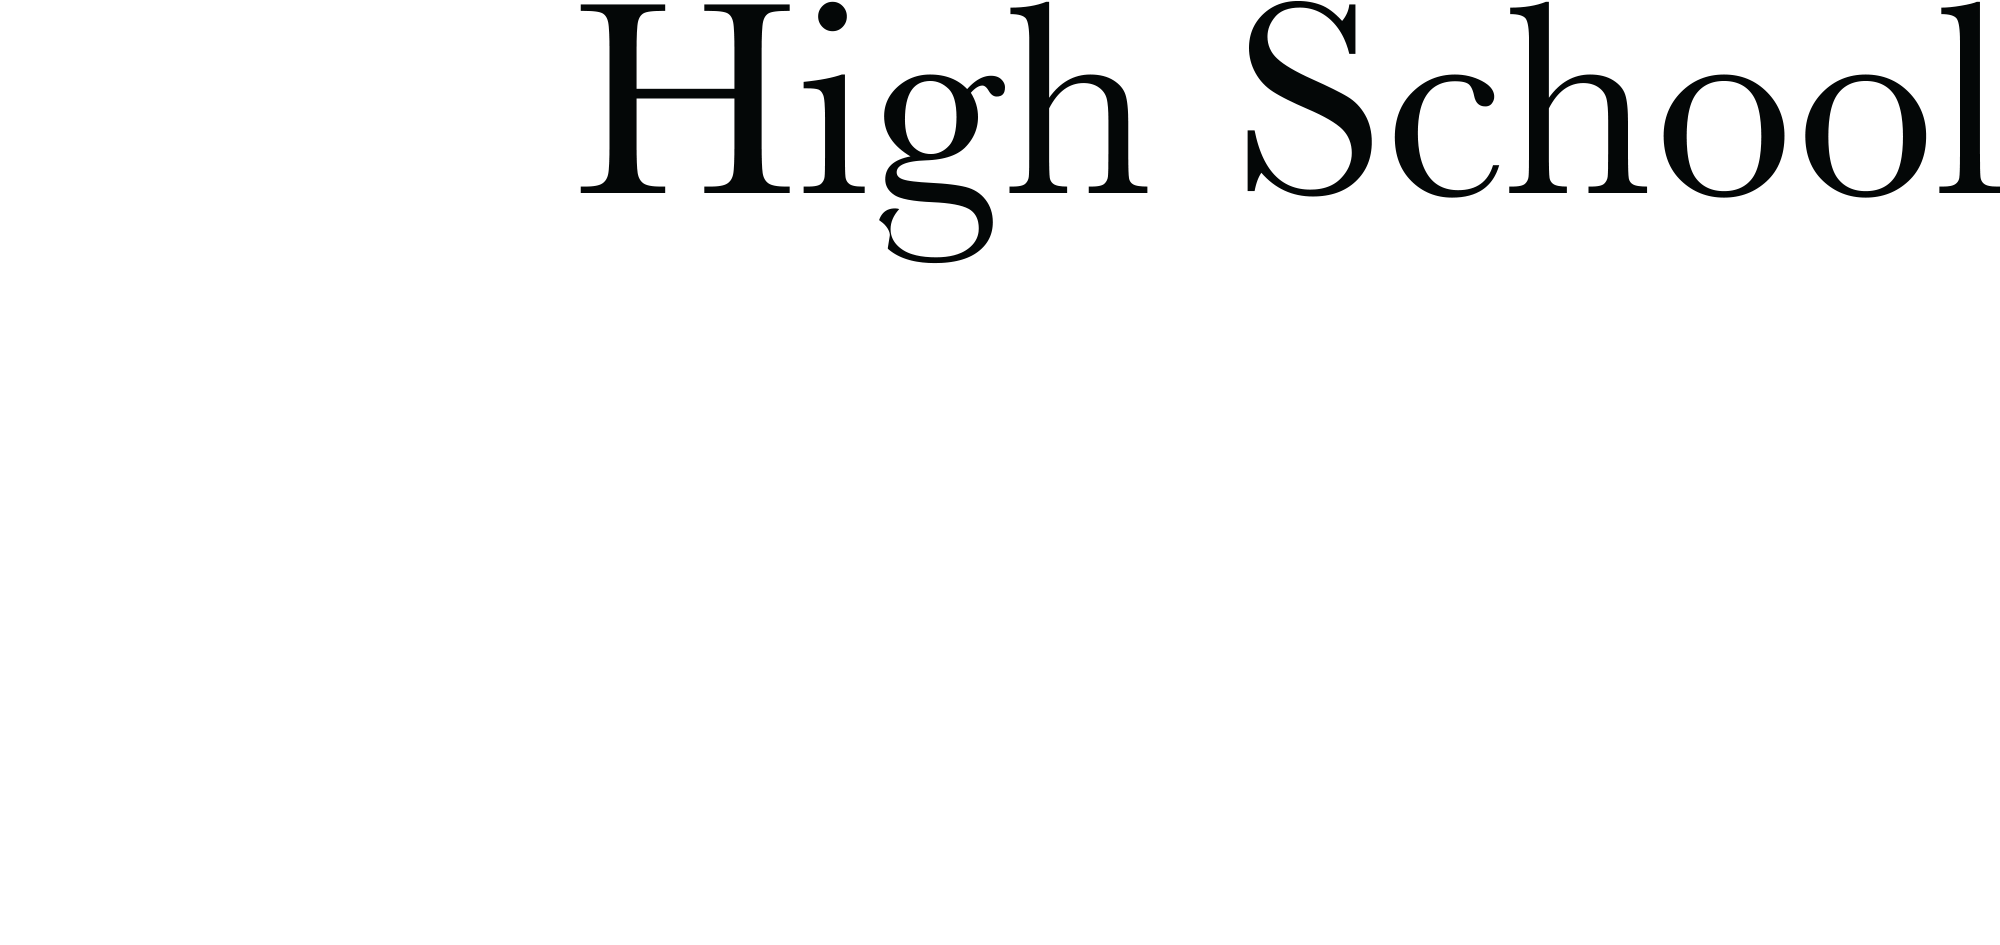 High School Helpline typography